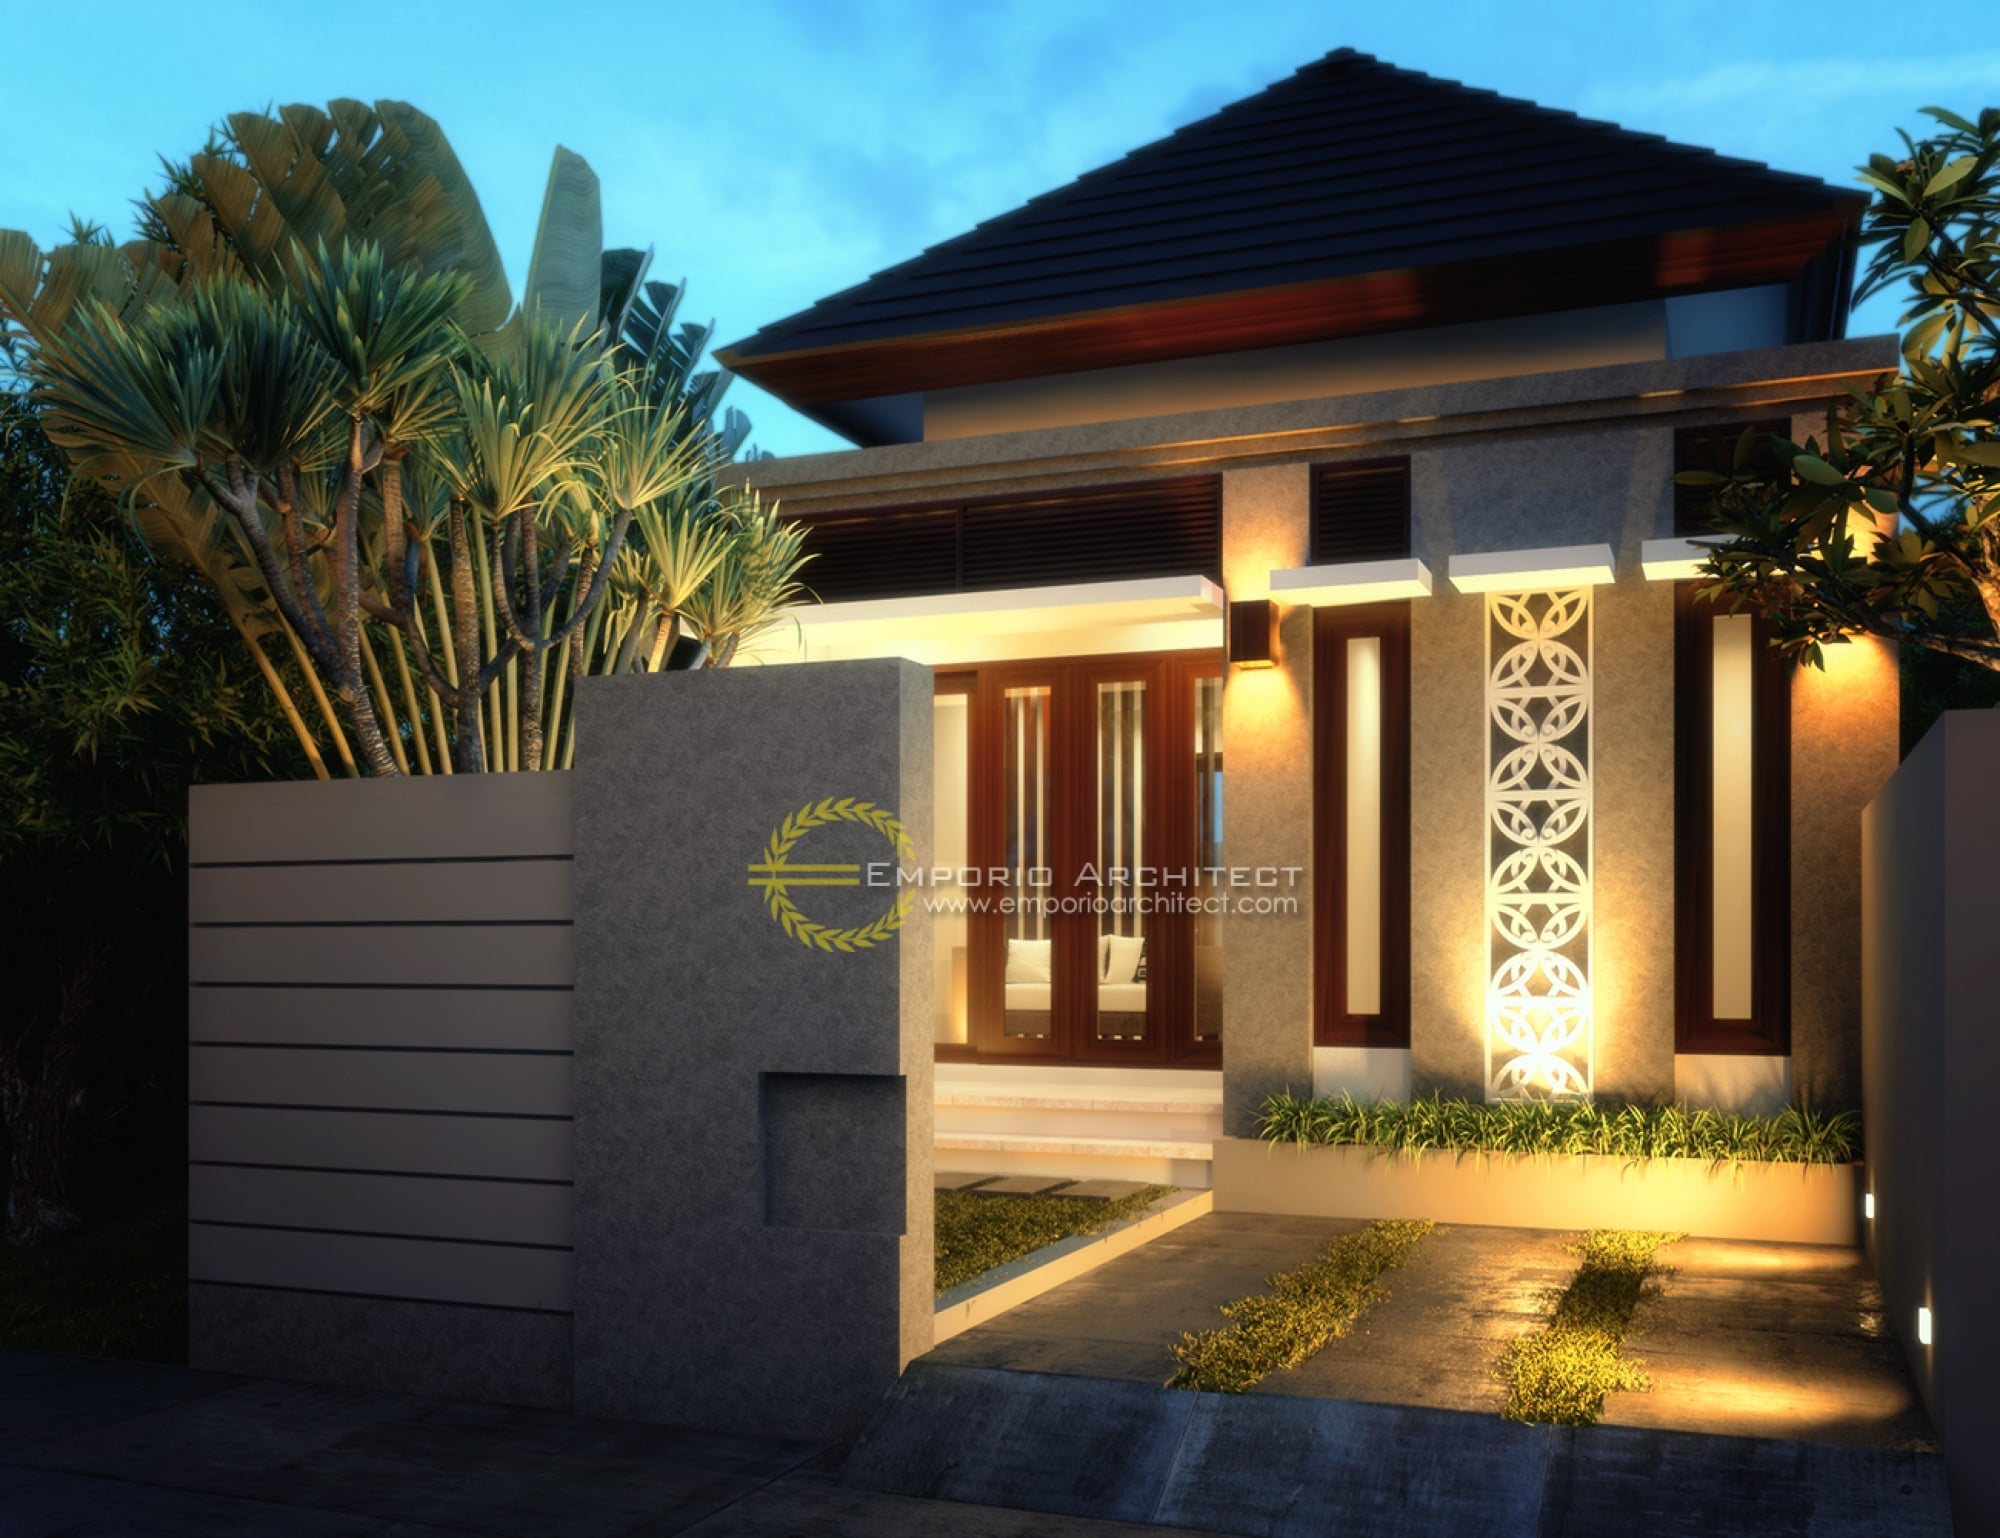  Sederhana  Desain Rumah  Minimalis Nuansa  Bali 52 Bangun Ide 